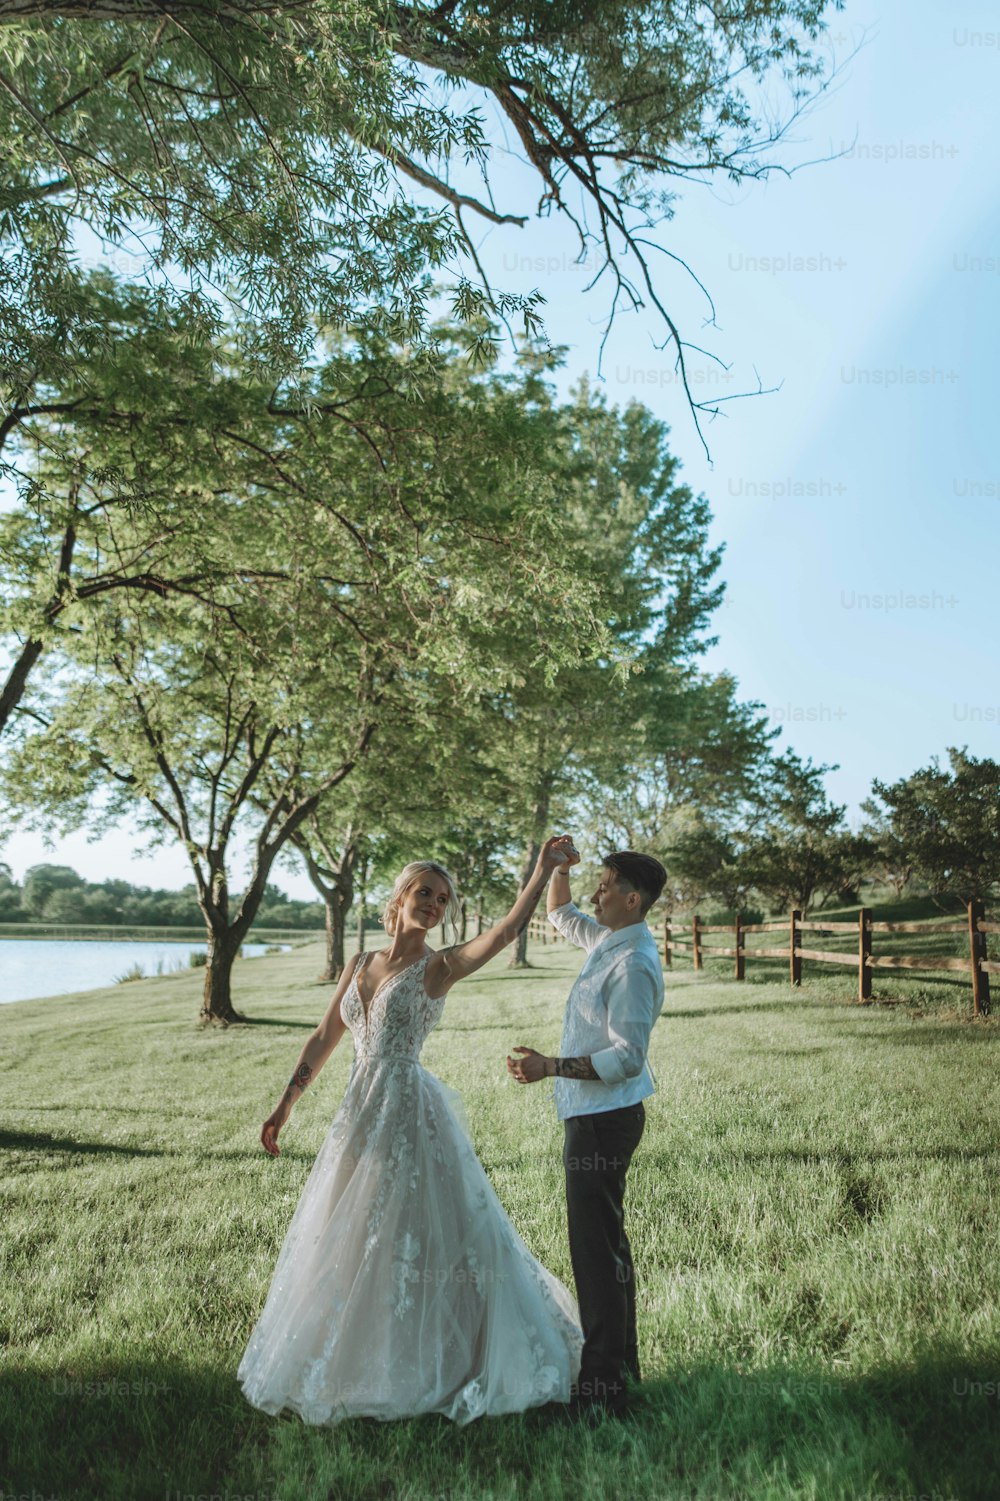 Una novia y un novio bailando en un campo